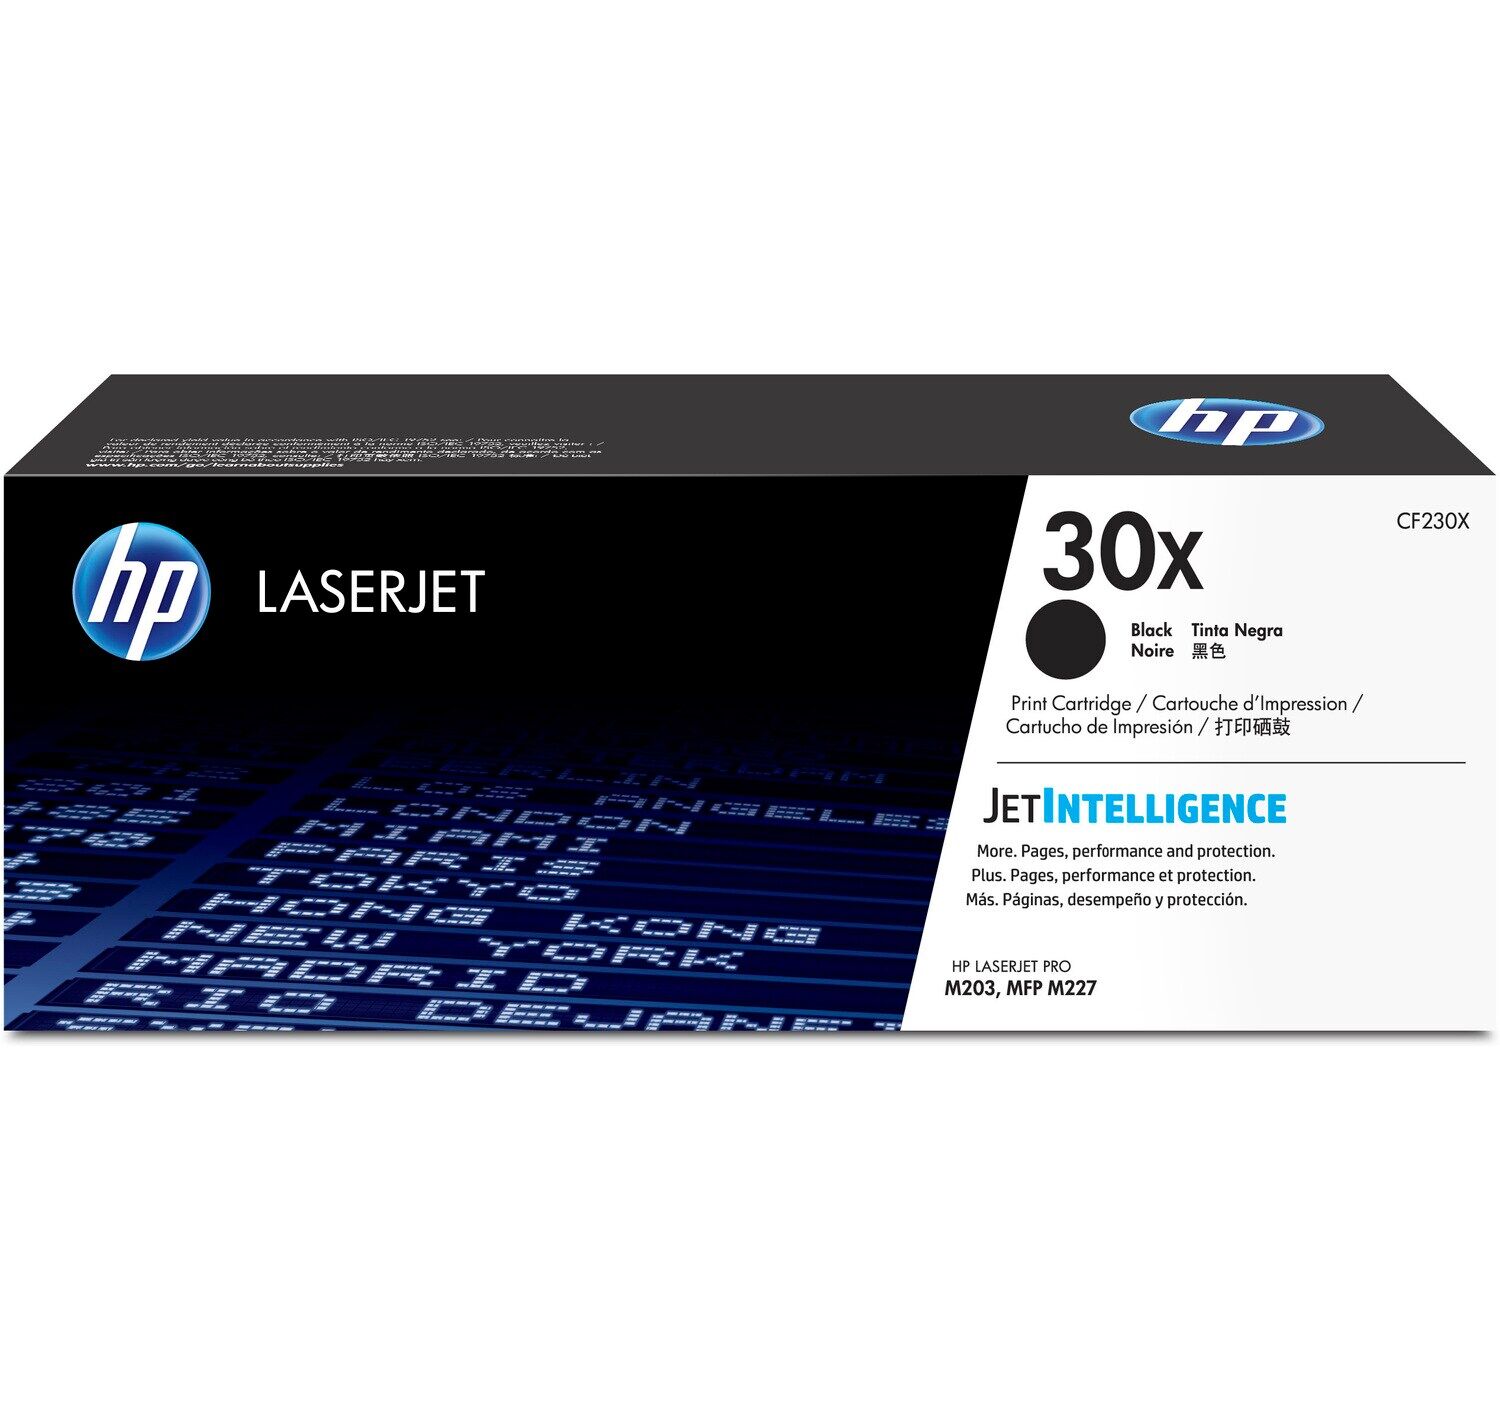 Картридж для печати HP Картридж HP 30x CF230X вид печати лазерный, цвет Черный, емкость